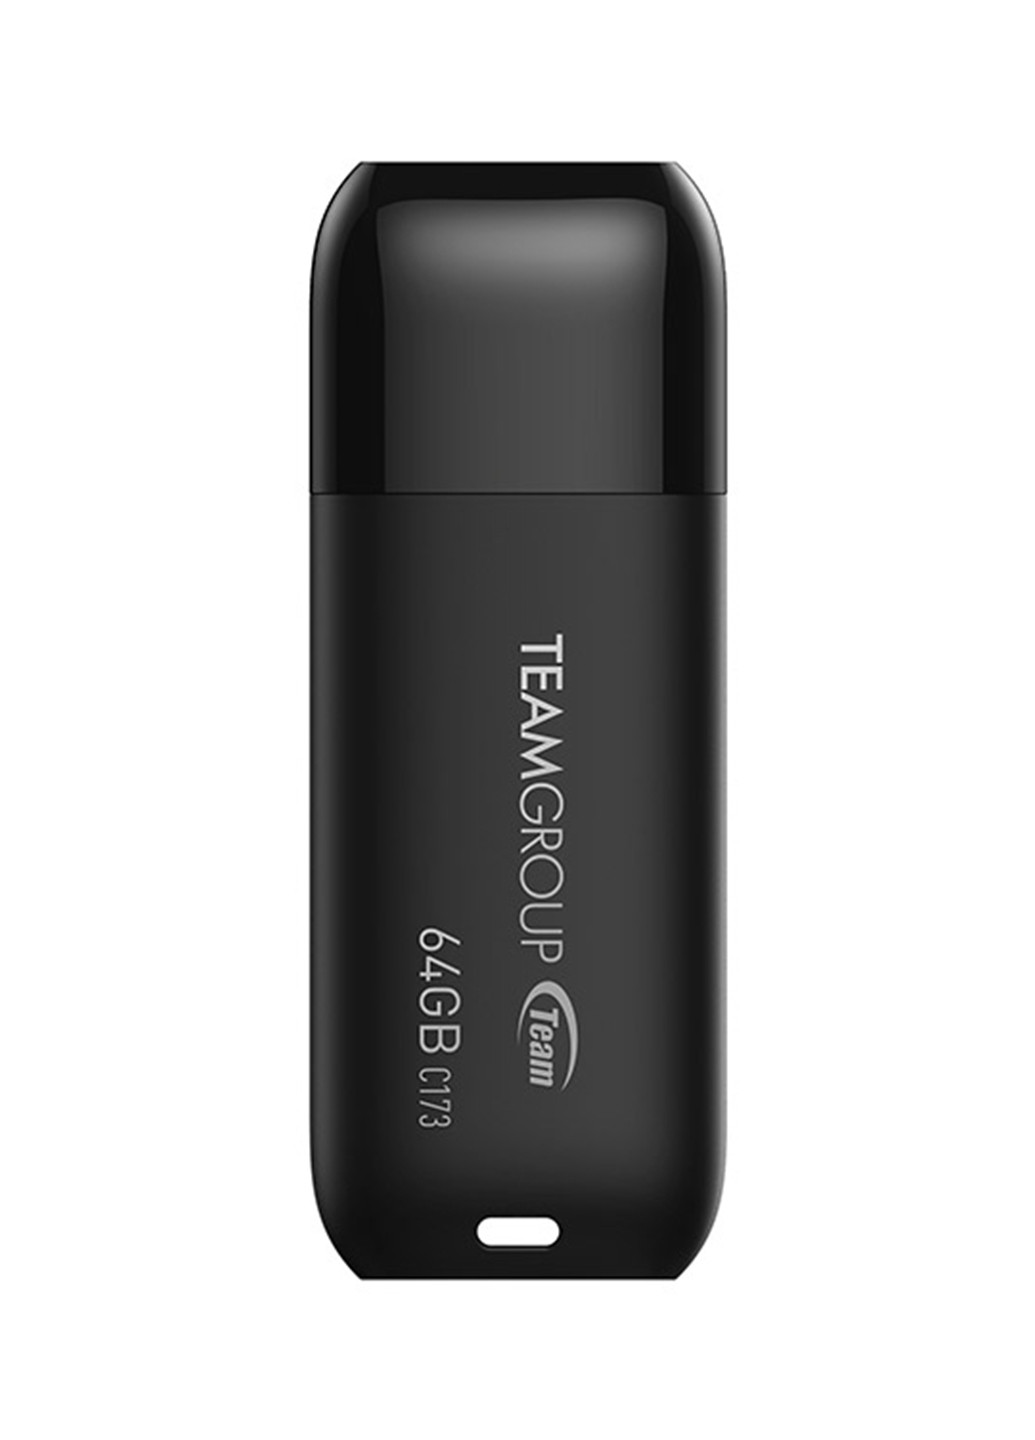 Флеш память USB C173 64GB Pearl Black (TC17364GB01) Team флеш память usb team c173 64gb pearl black (tc17364gb01) (134201659)